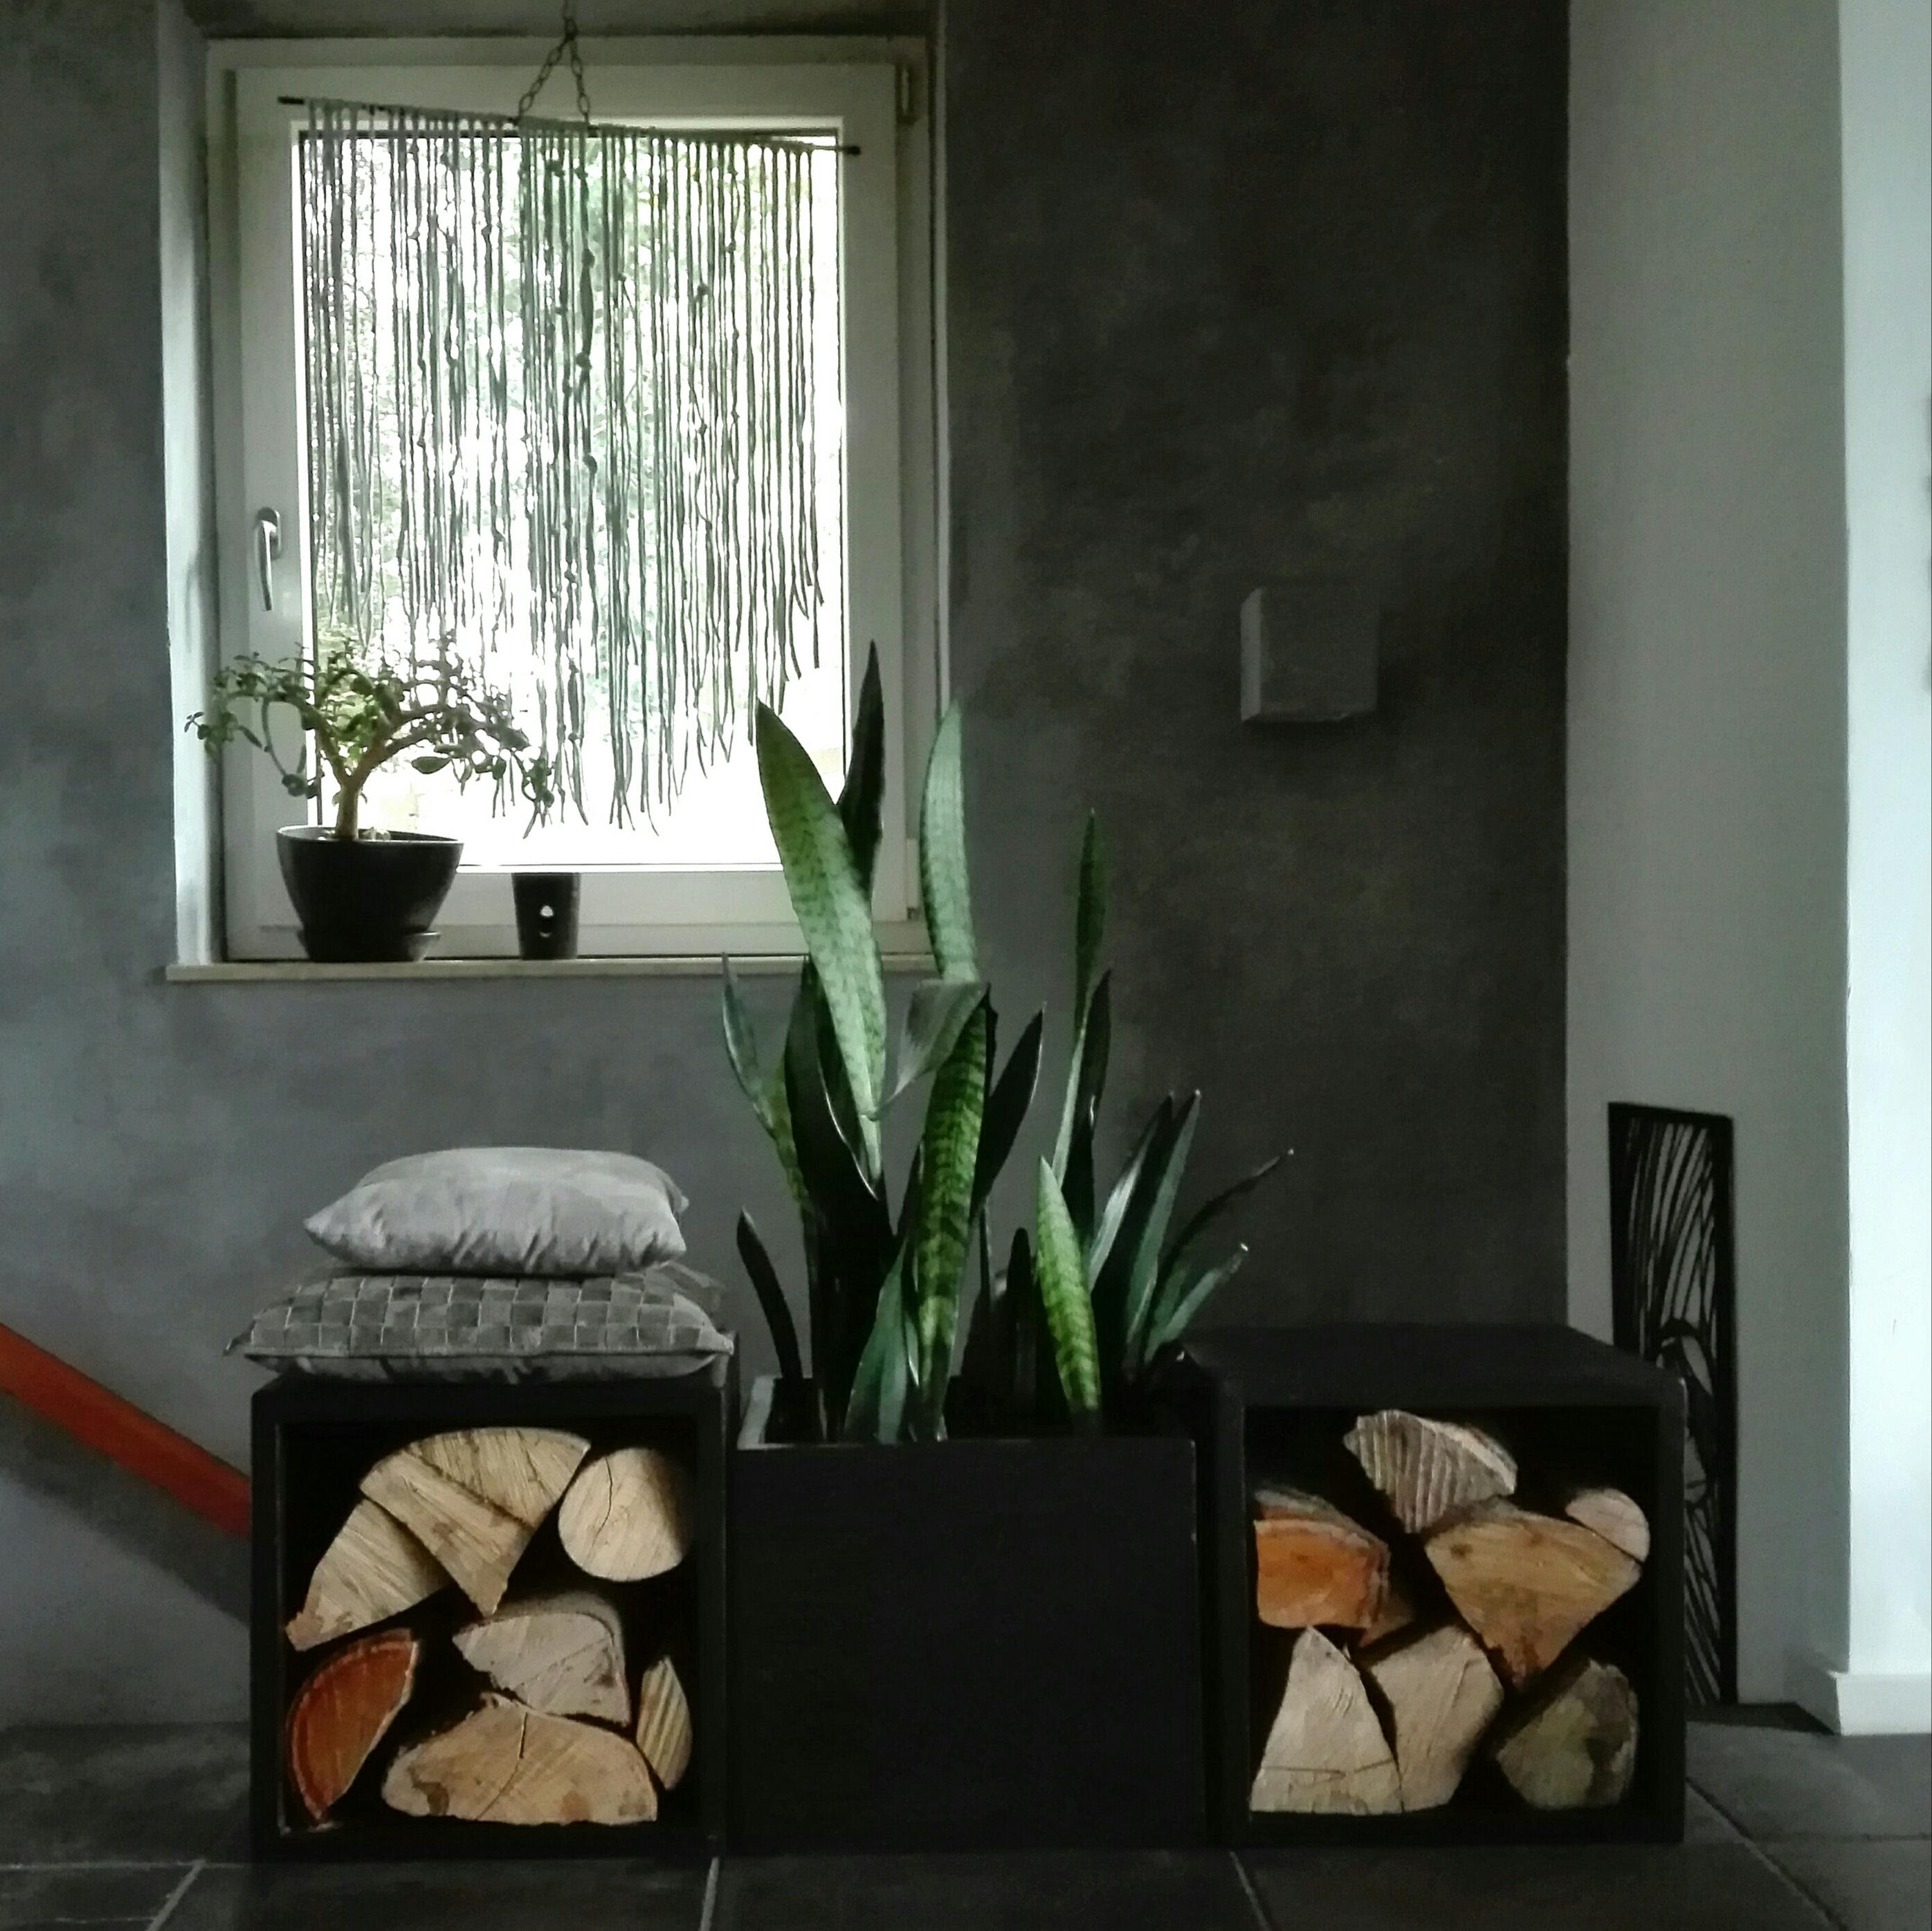 #herbst #minimalistisch #wohnzimmer #kalkputz #diy #urbanjungle #natursteinboden